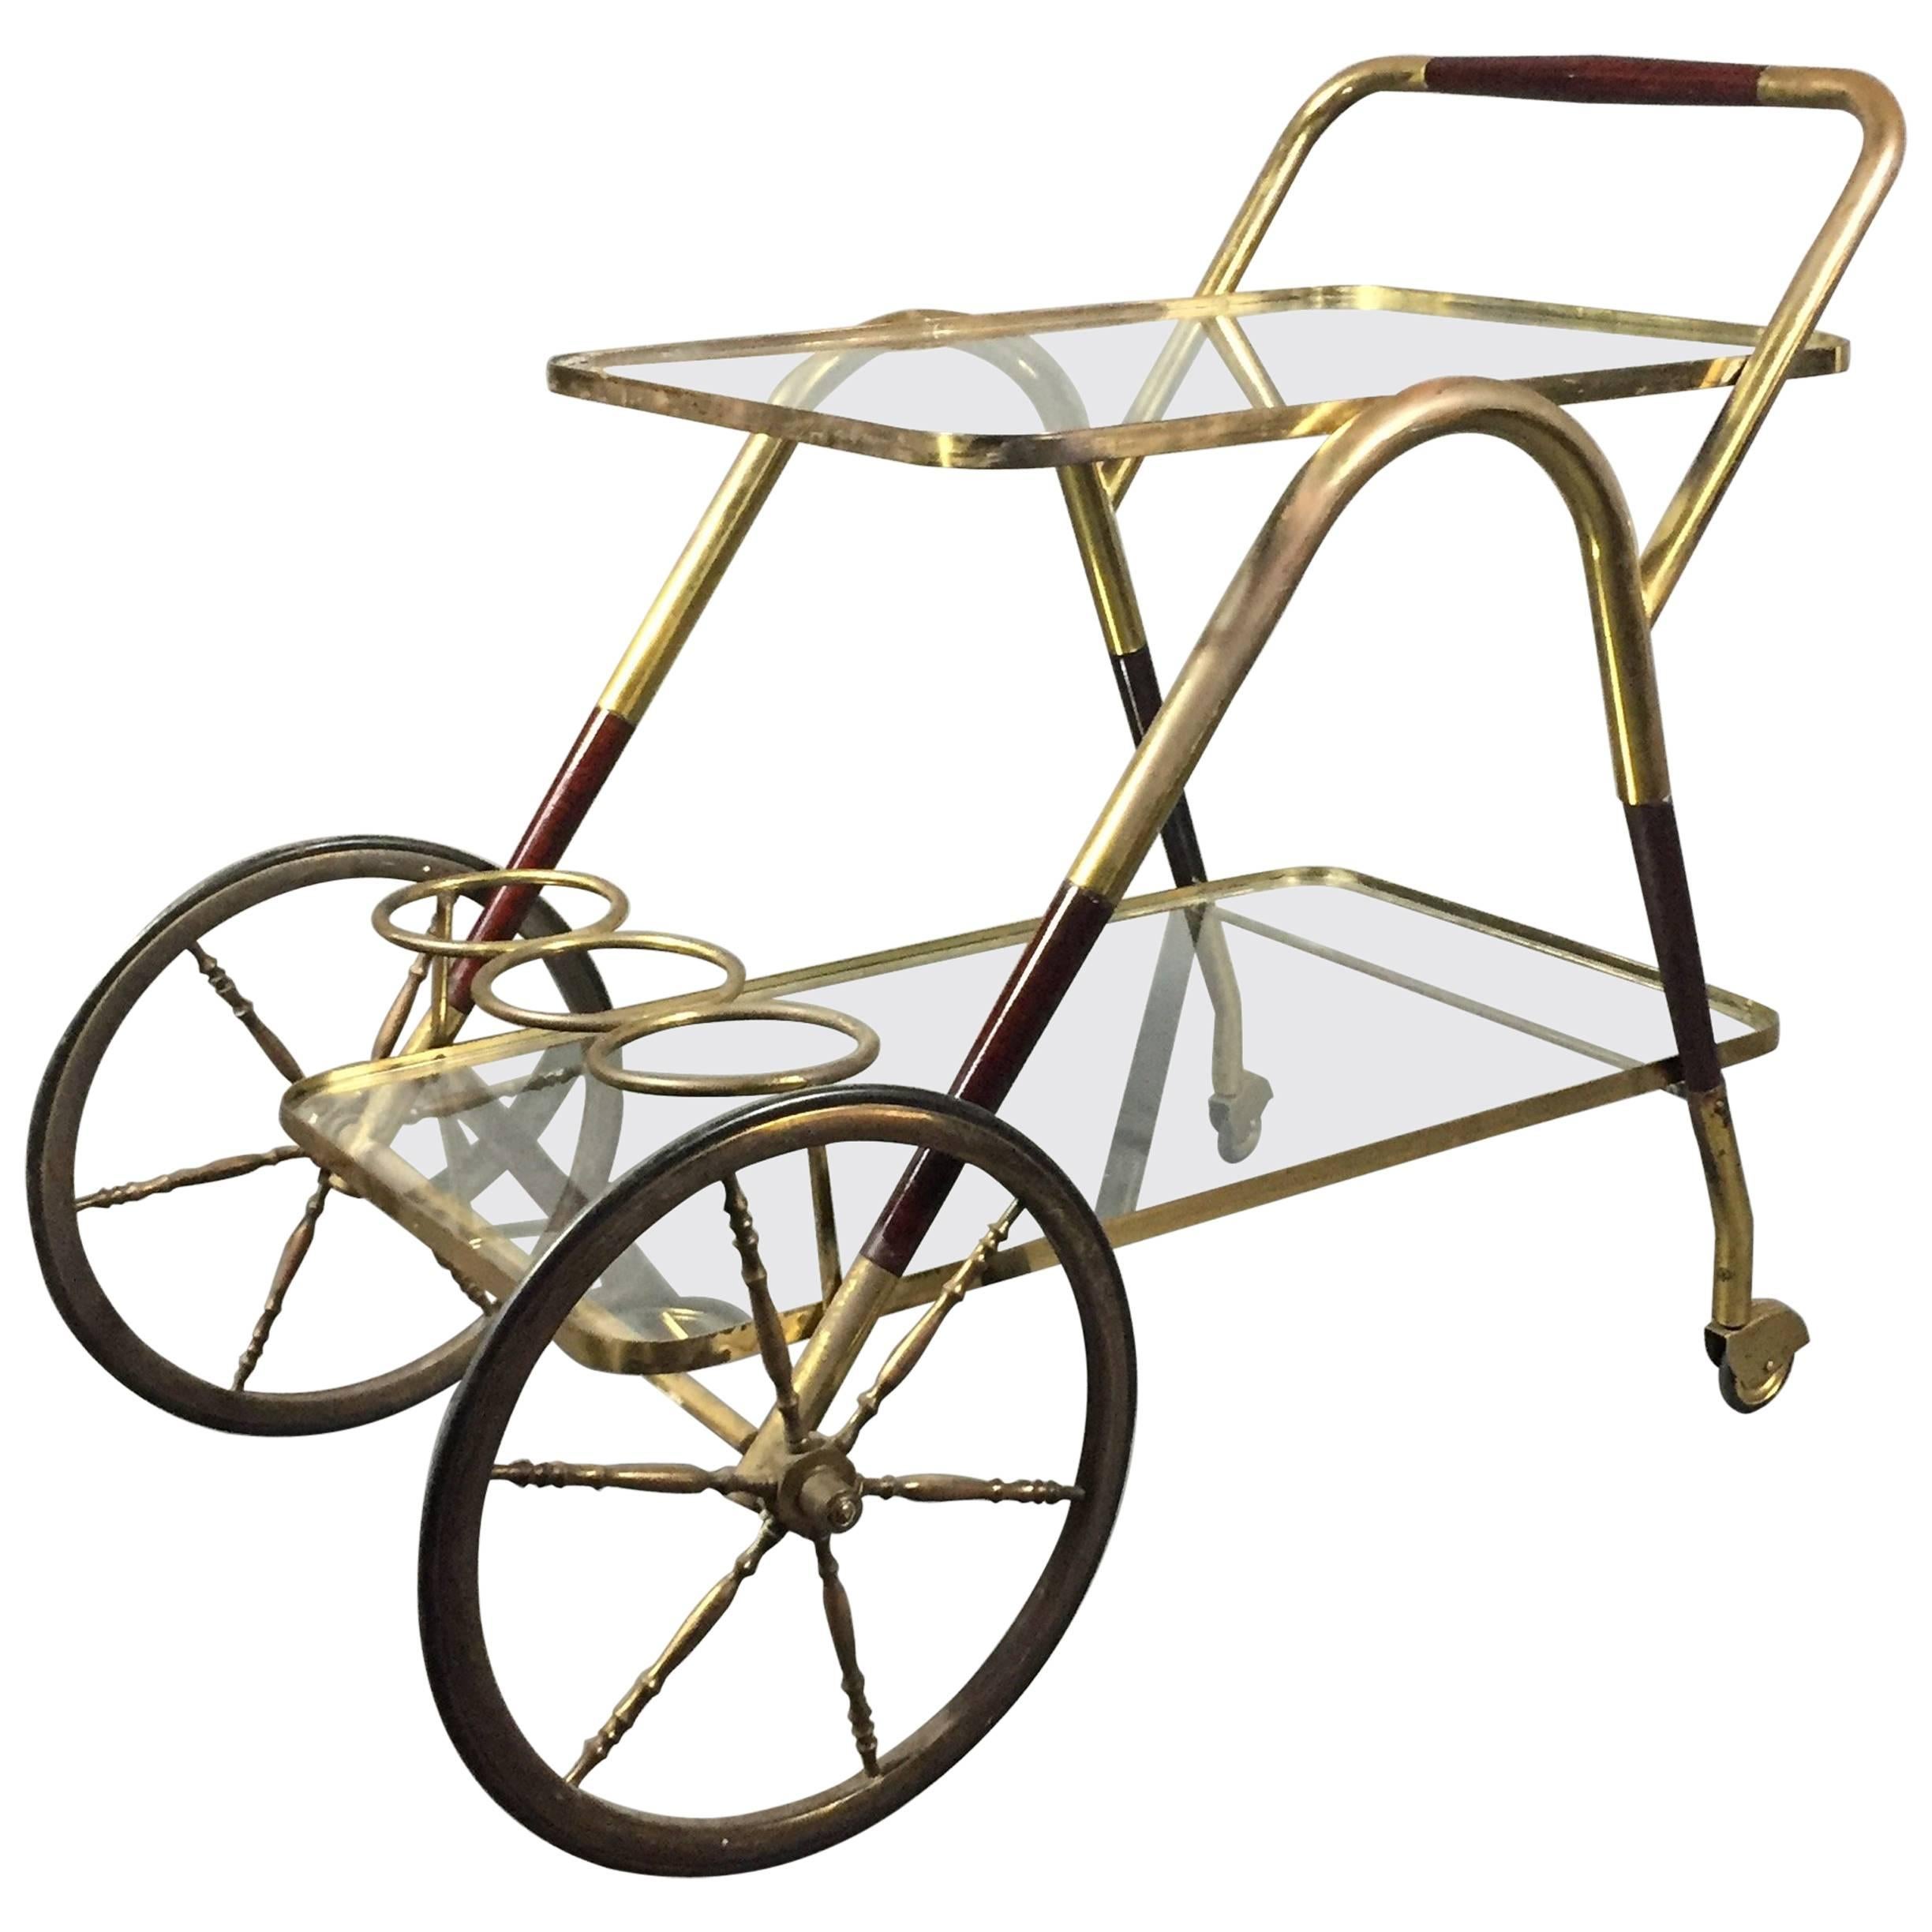 Italian Mahogany and Brass Drinks Cart, circa 1960